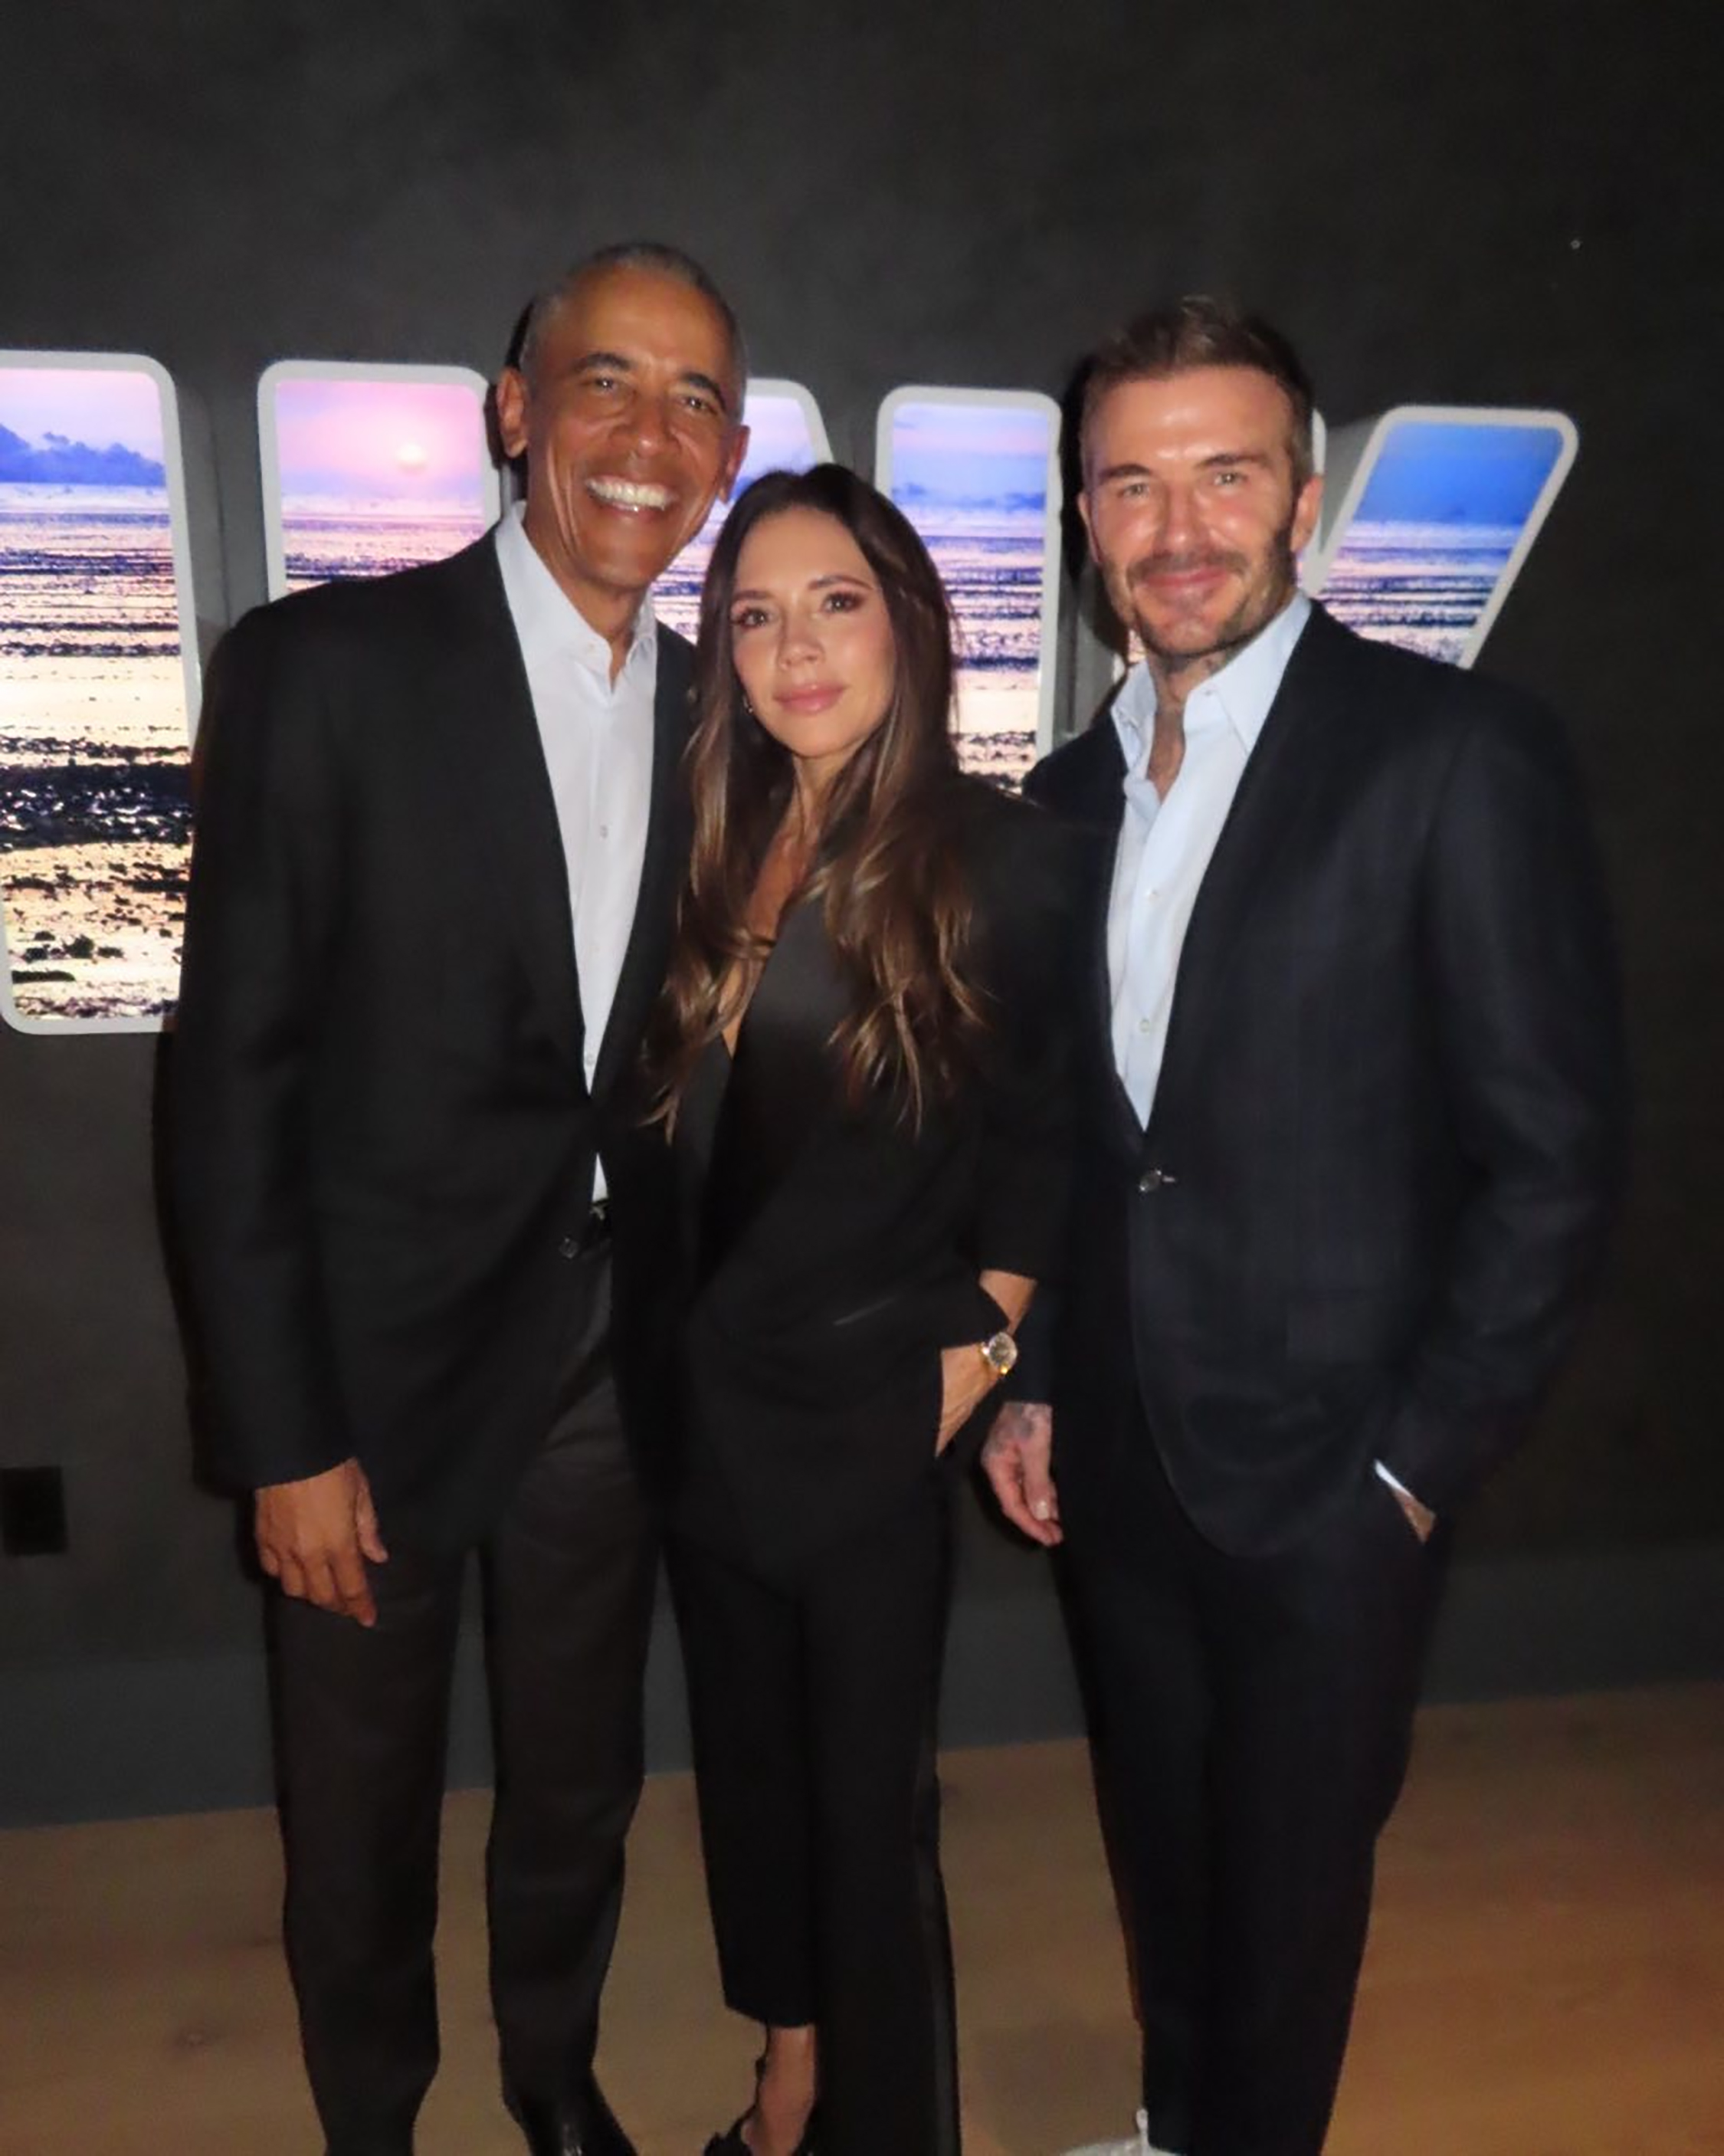 David et Victoria Beckham soutiennent la Fondation Obama de Barack Obama plus tôt ce mois-ci aux États-Unis.